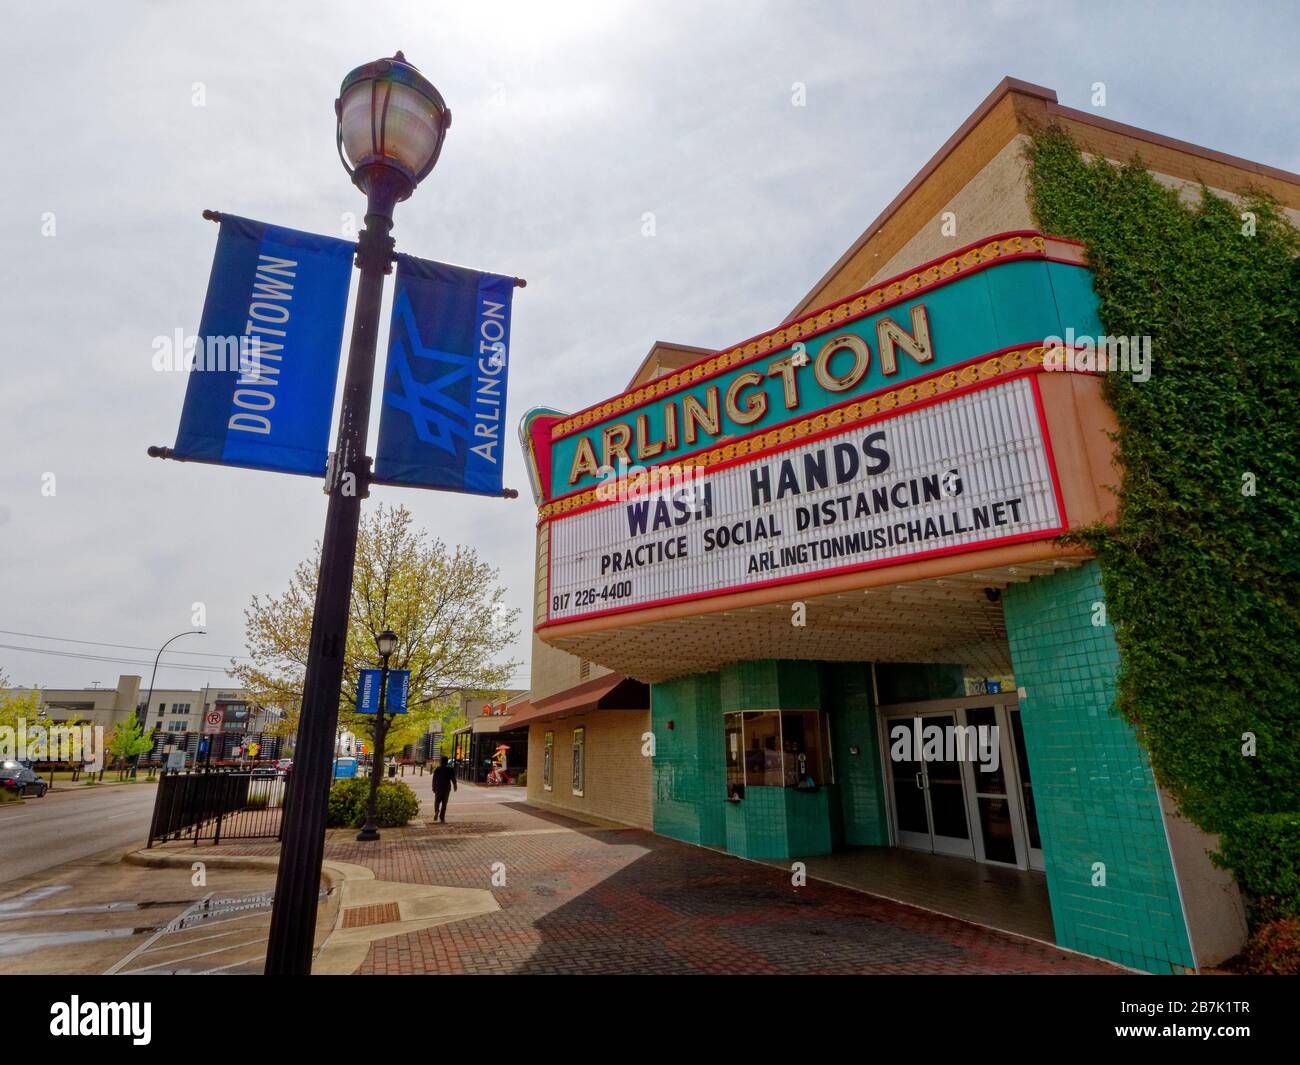 Arlington, Texas, USA (16/03/2020) das alte Kino in der Innenstadt von Arlington fordert die Bewohner auf, sich häufig die Hände zu waschen und niemandem nahe zu stehen. Arlington liegt zwischen Dallas und Fort Worth, Texas. Wo mehr als 350.000 Menschen leben. Das alte Kino wird heute für Live-Auftritte genutzt. Stockfoto